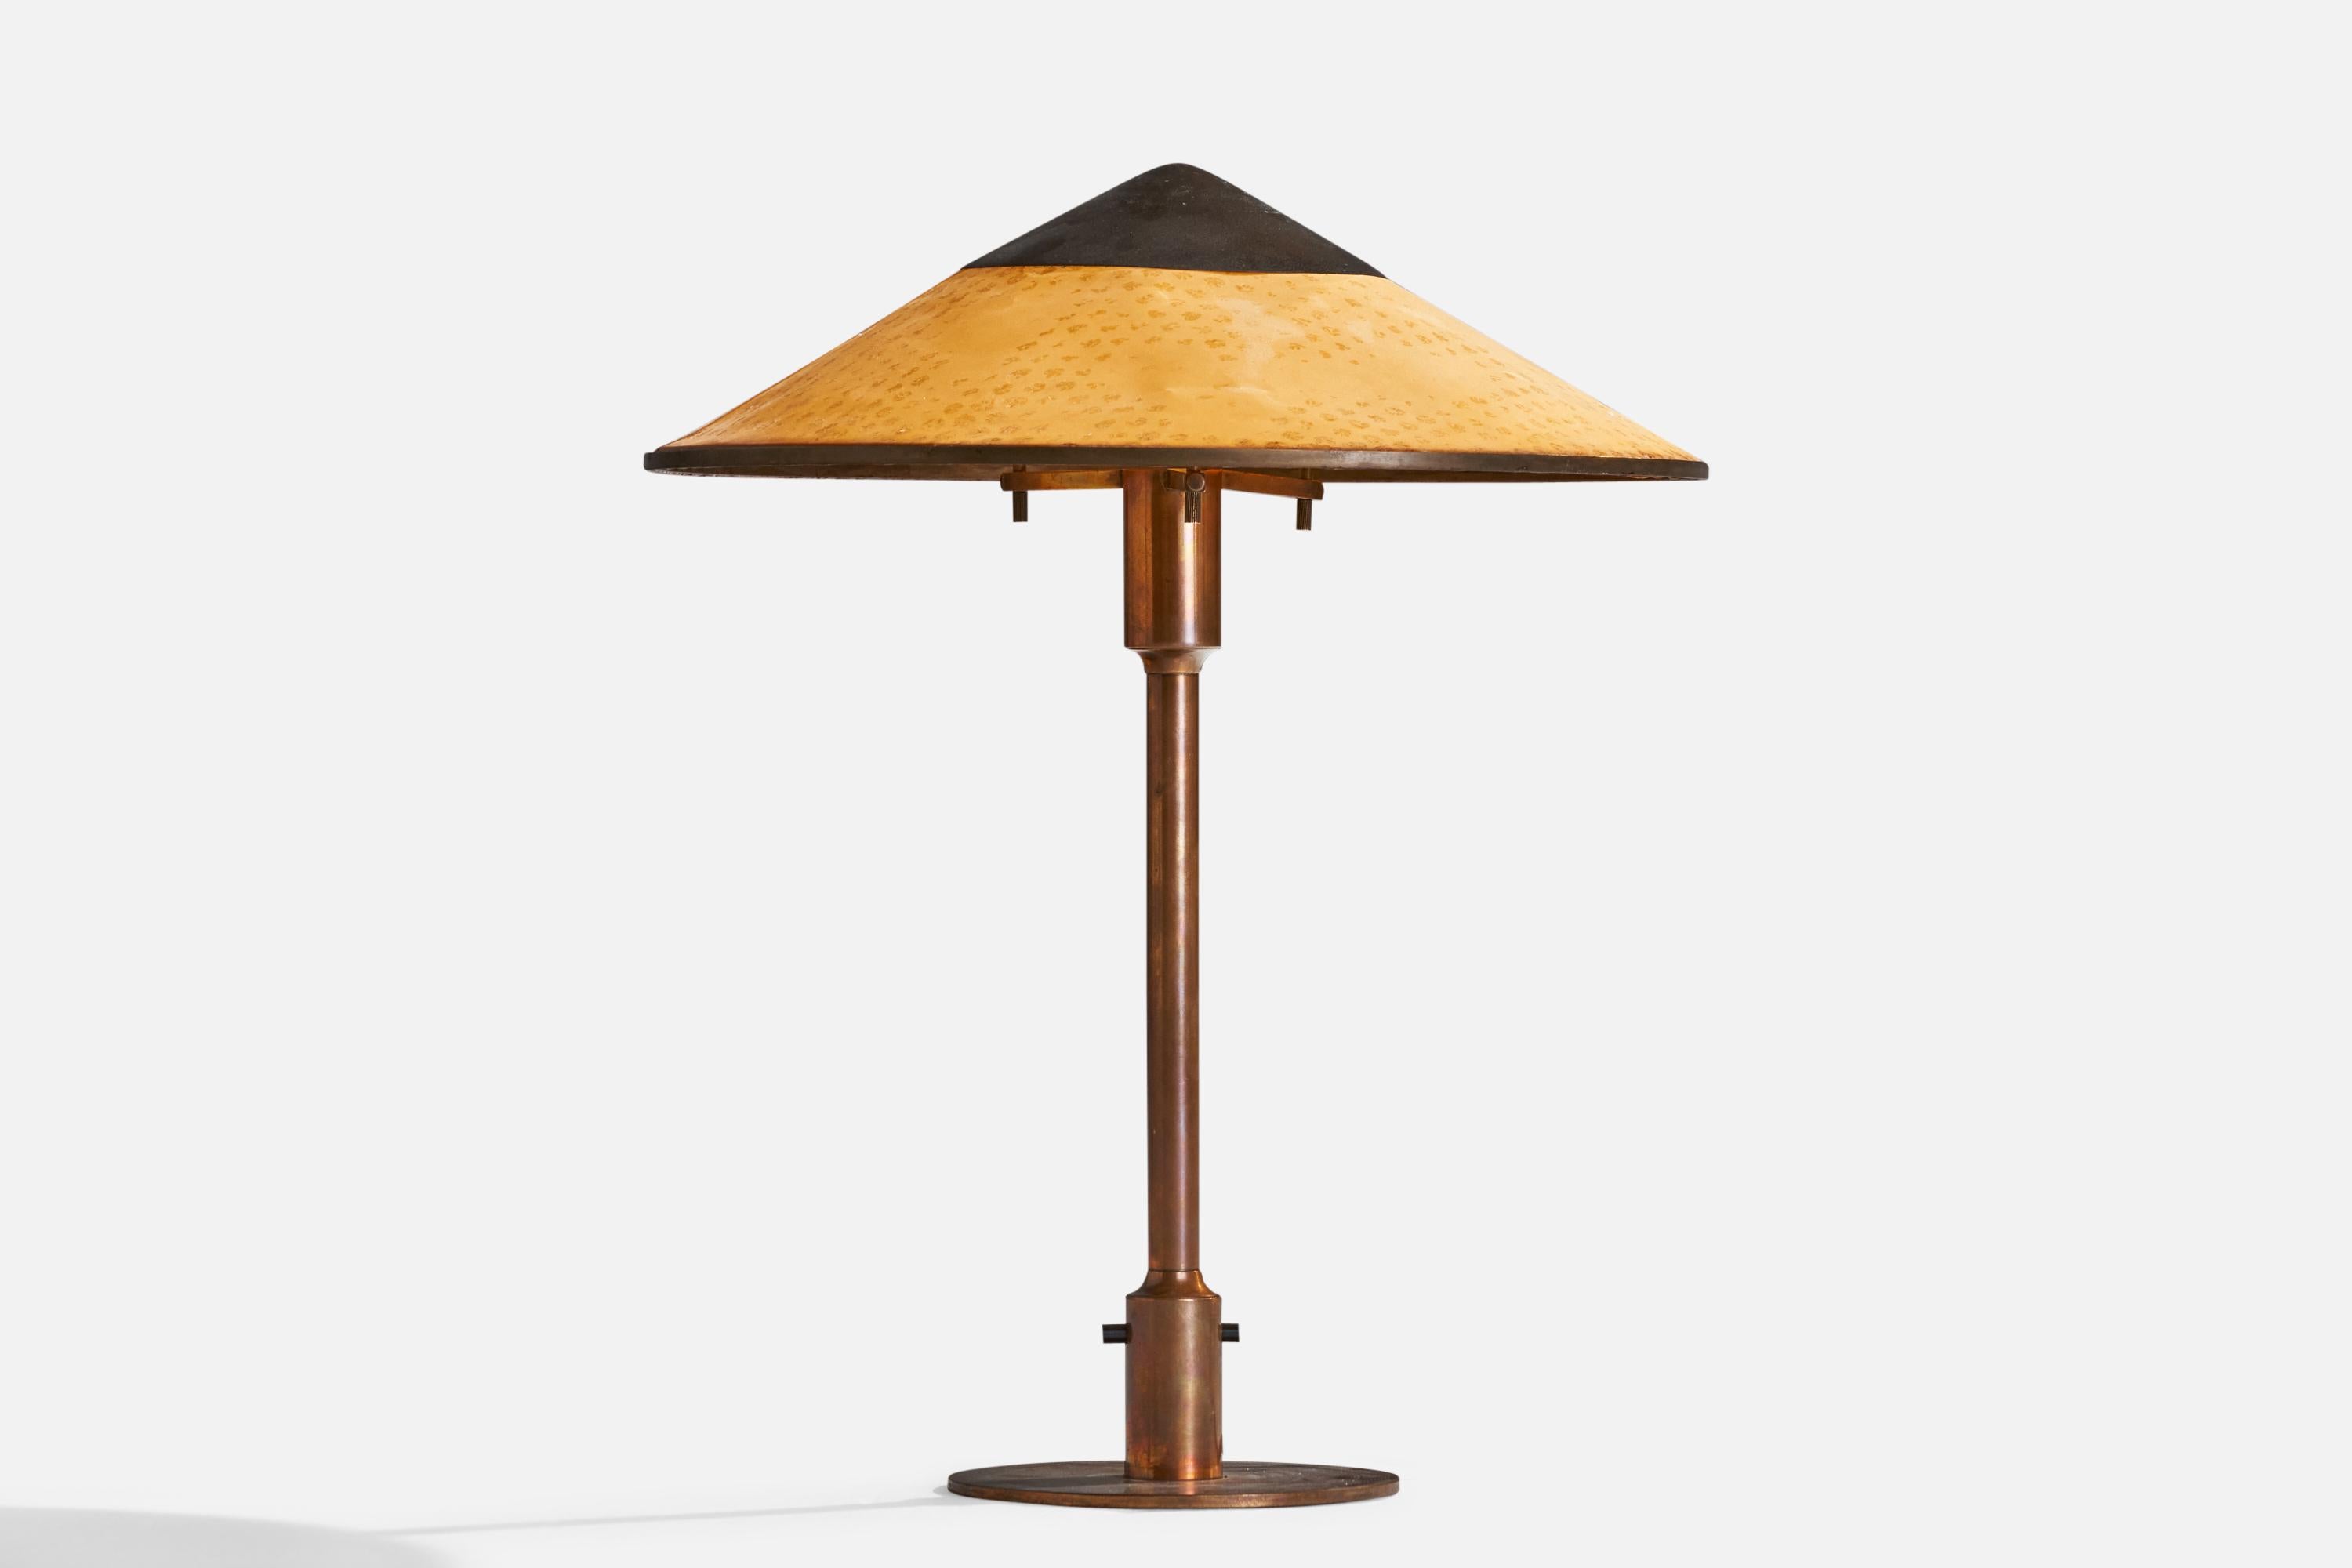 Lampe de table en cuivre et papier ciré orange conçue et produite par Niels Rasmussen Thykier, Danemark, années 1930.

Dimensions globales (pouces) : 19.5